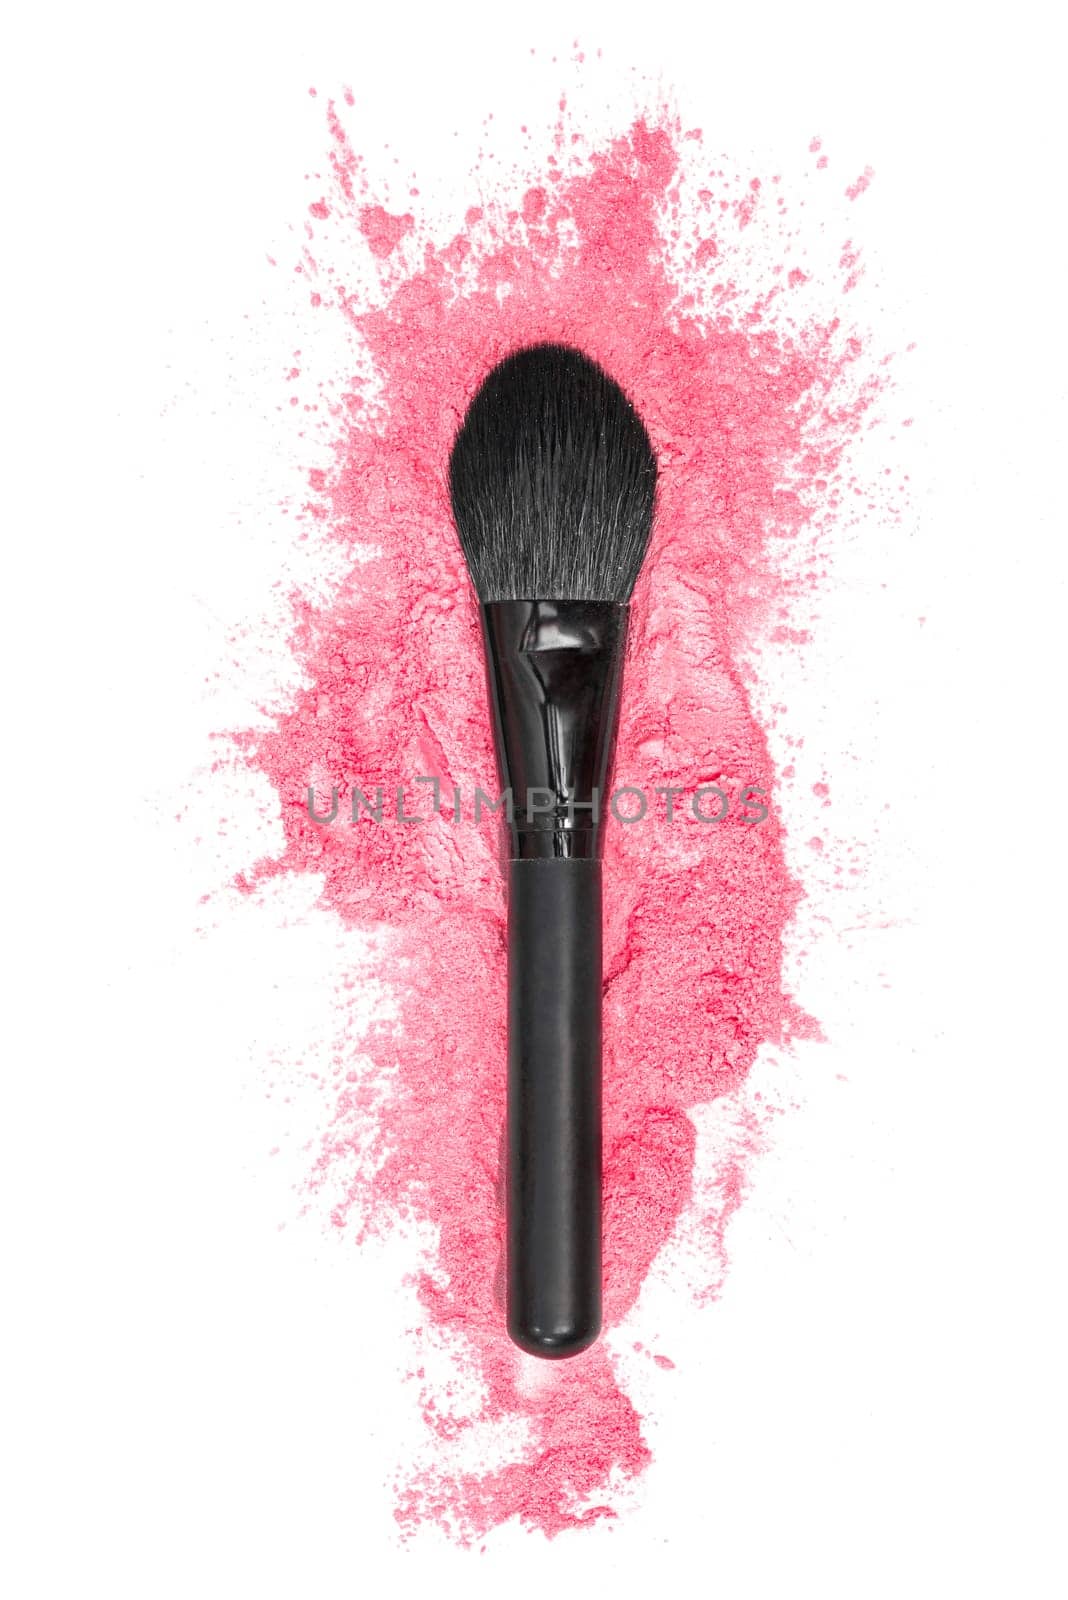 Eye brush and pink powder splash on a white background. by Shablovskyistock